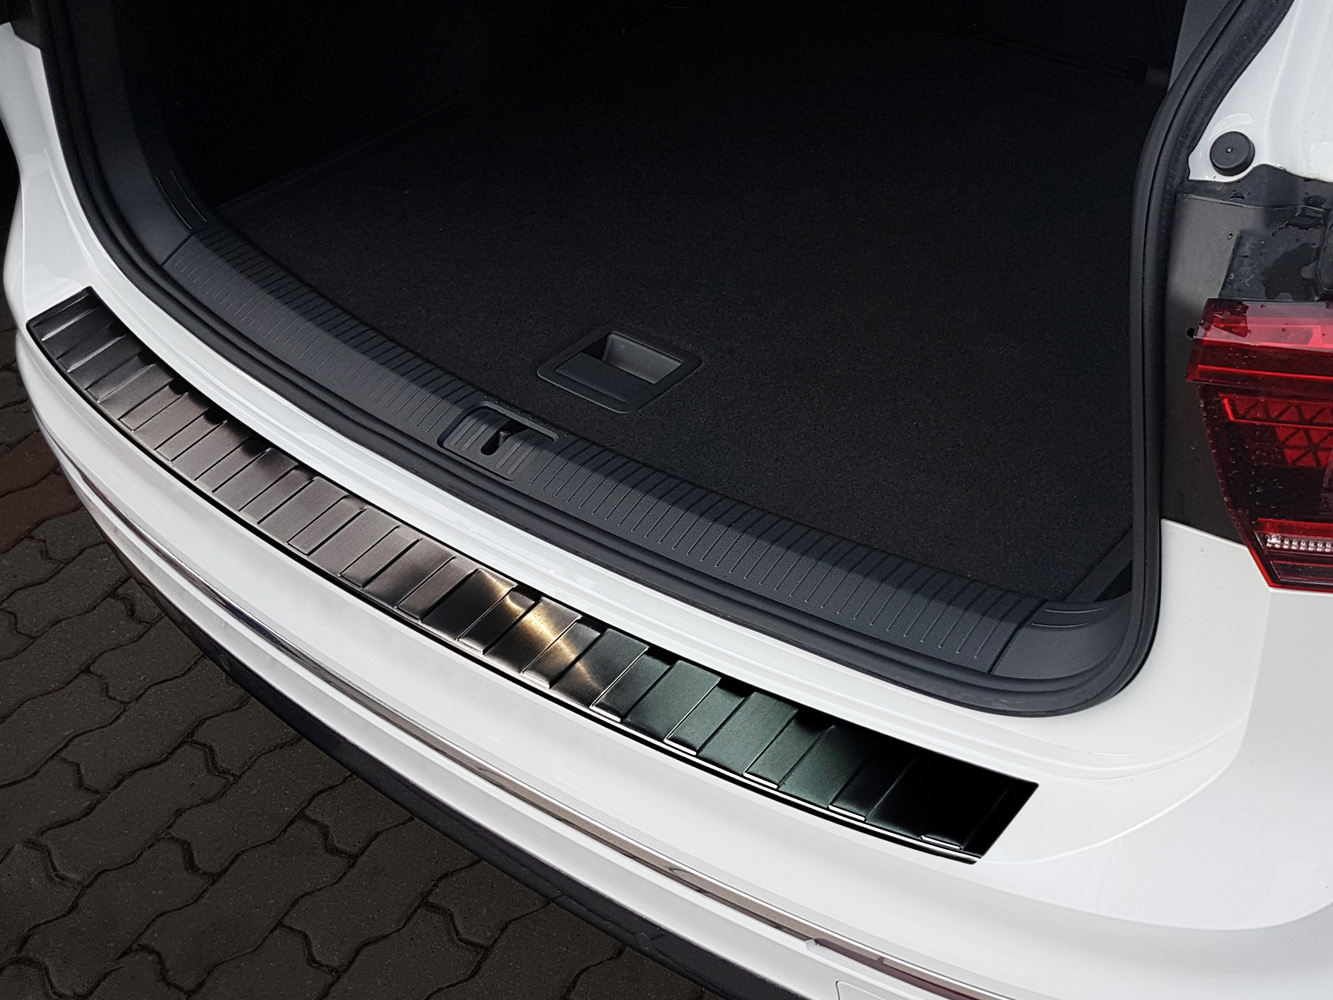 Ladekantenschutz für VW TIGUAN - Schutz für die Ladekante Ihres Fahrzeuges